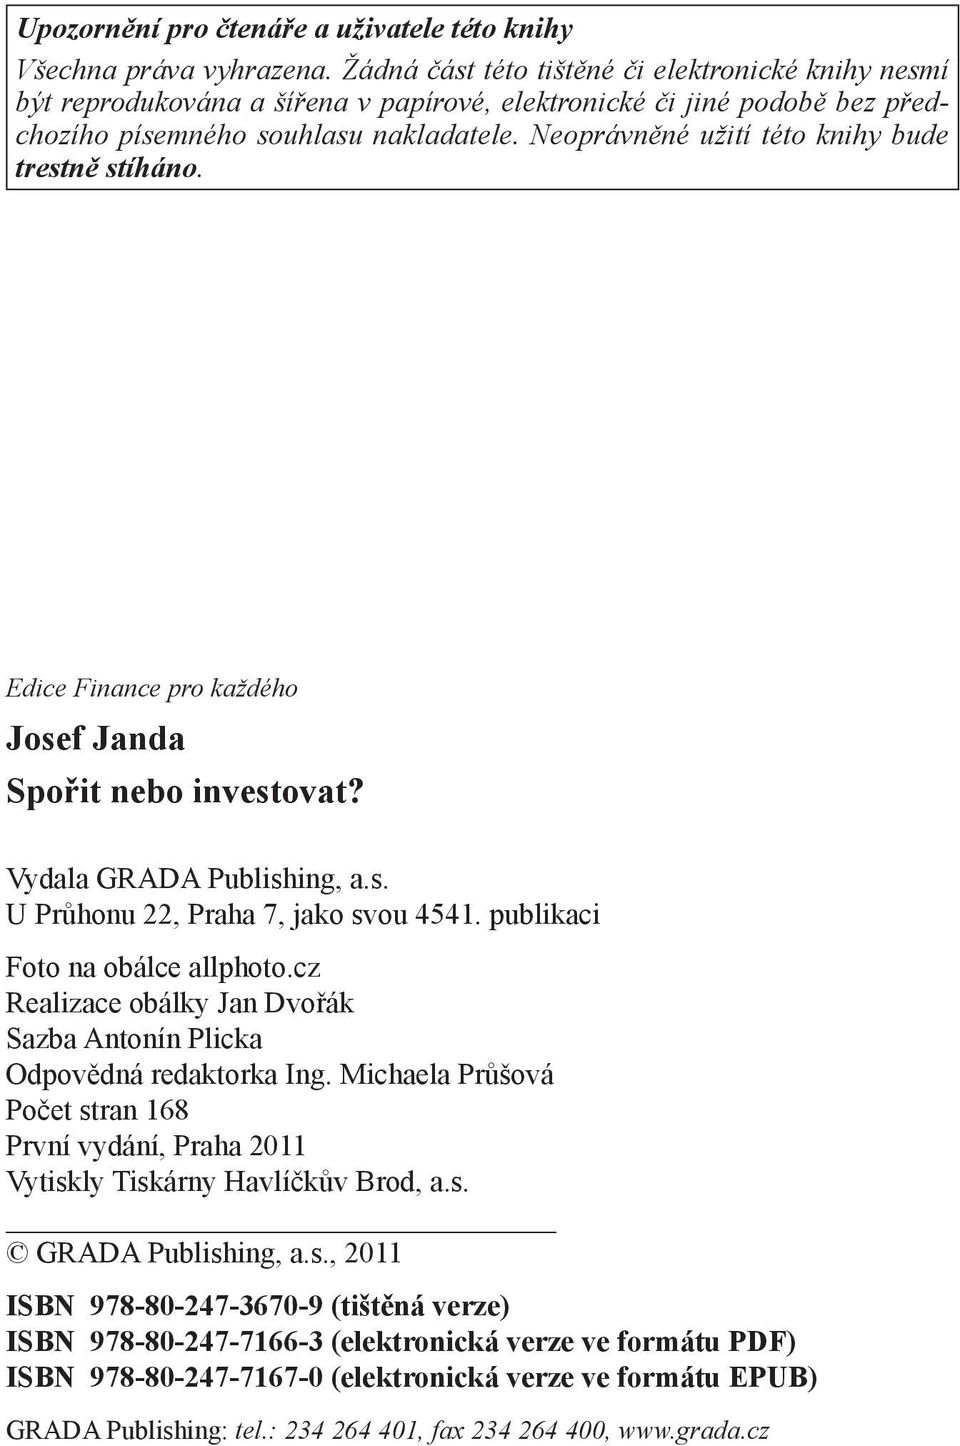 Neoprávněné užití této knihy bude trestně stíháno. Edice Finance pro každého Josef Janda Spořit nebo investovat? Vydala GRADA Publishing, a.s. U Průhonu 22, Praha 7, jako svou 4541.